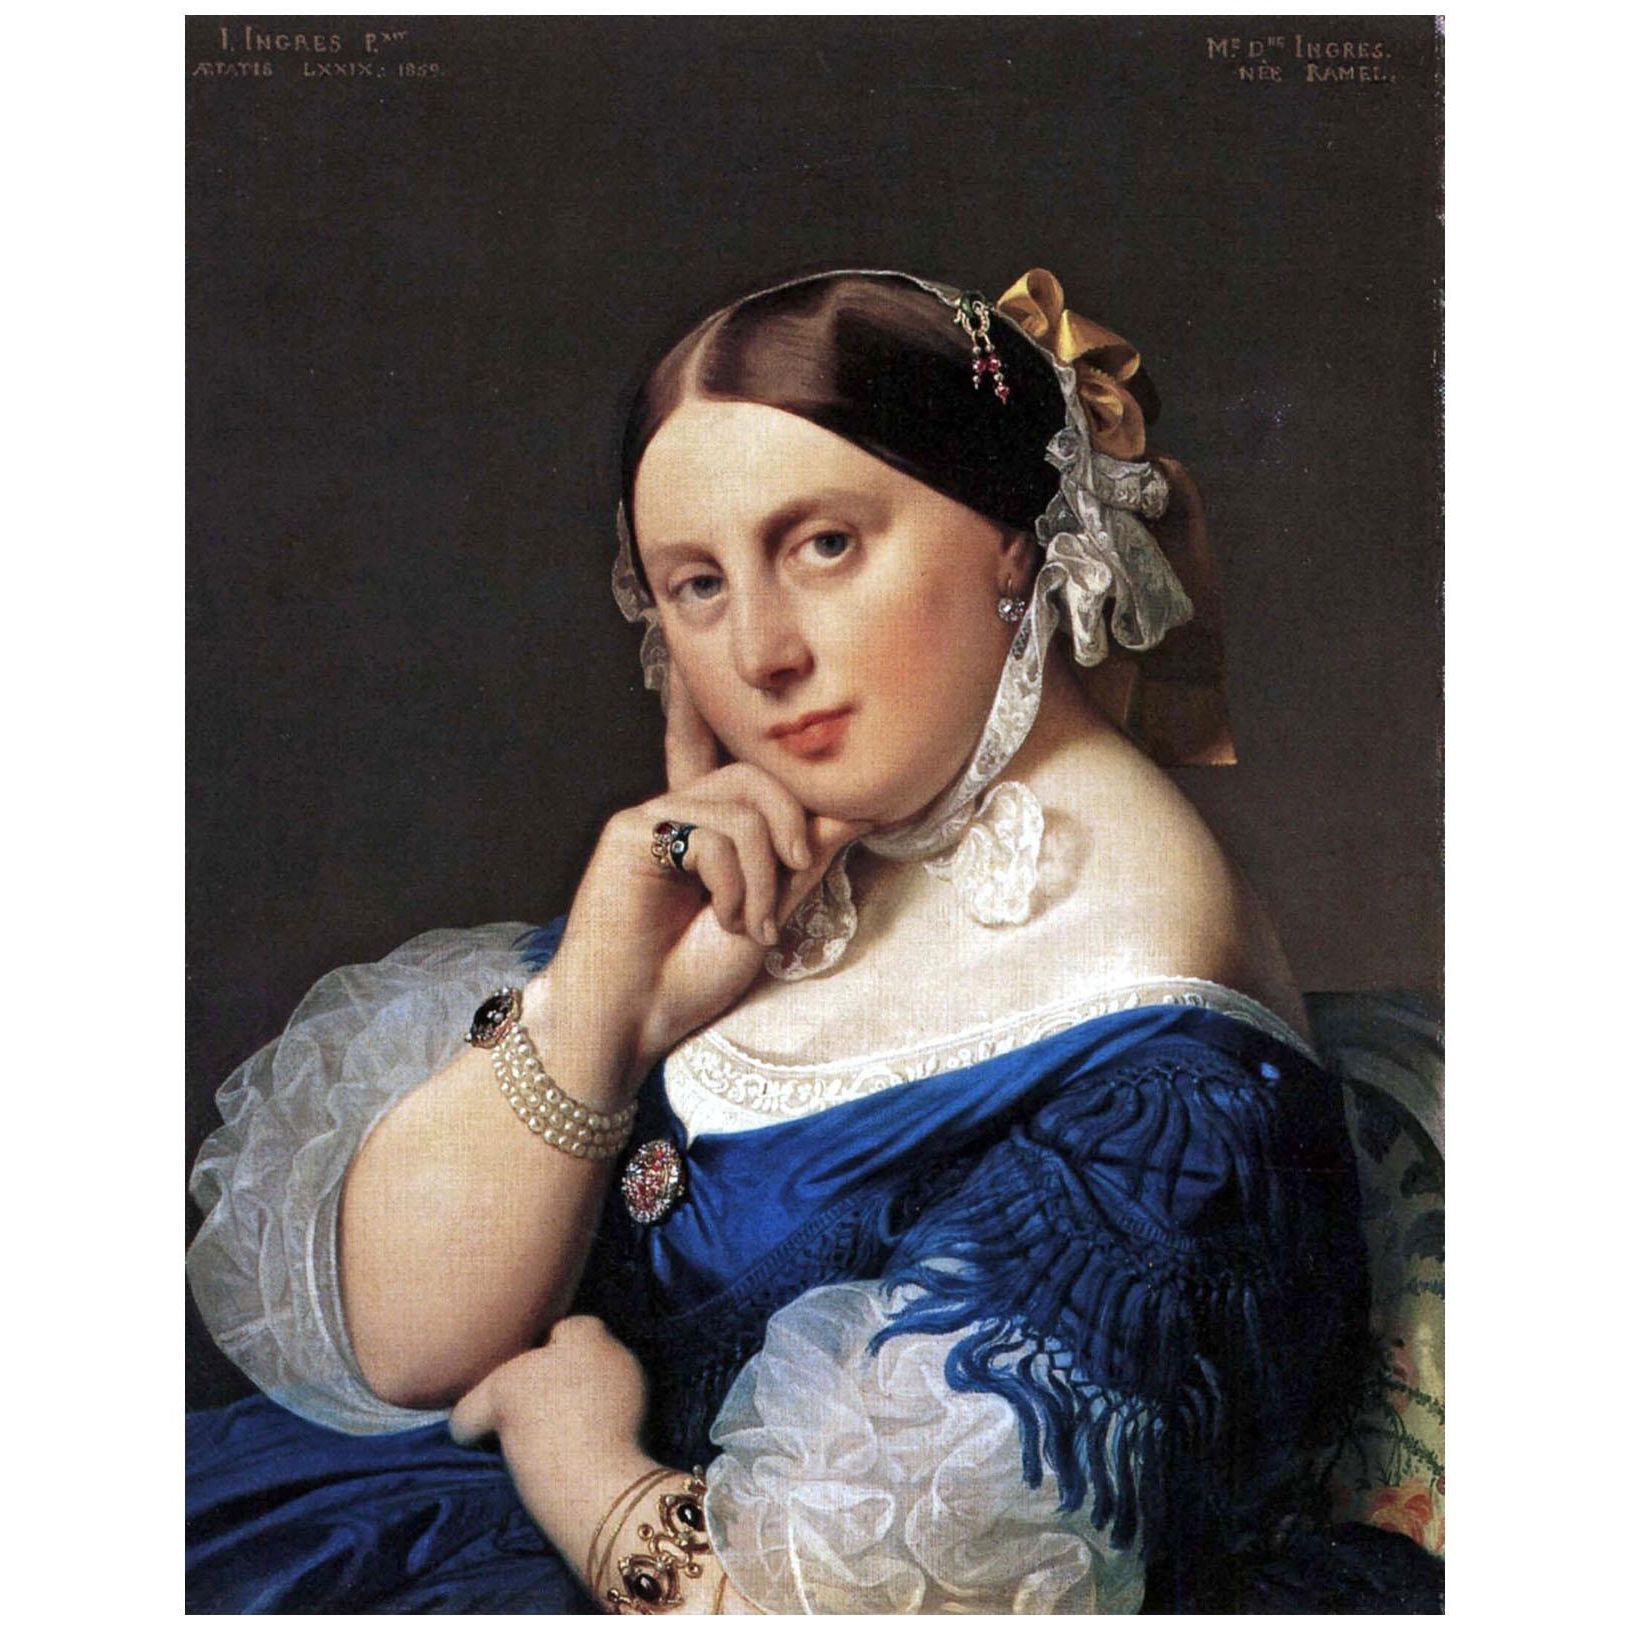 Dominique Ingres. Portrait de madame Ingres. 1859. Am Romerholz Winterthur